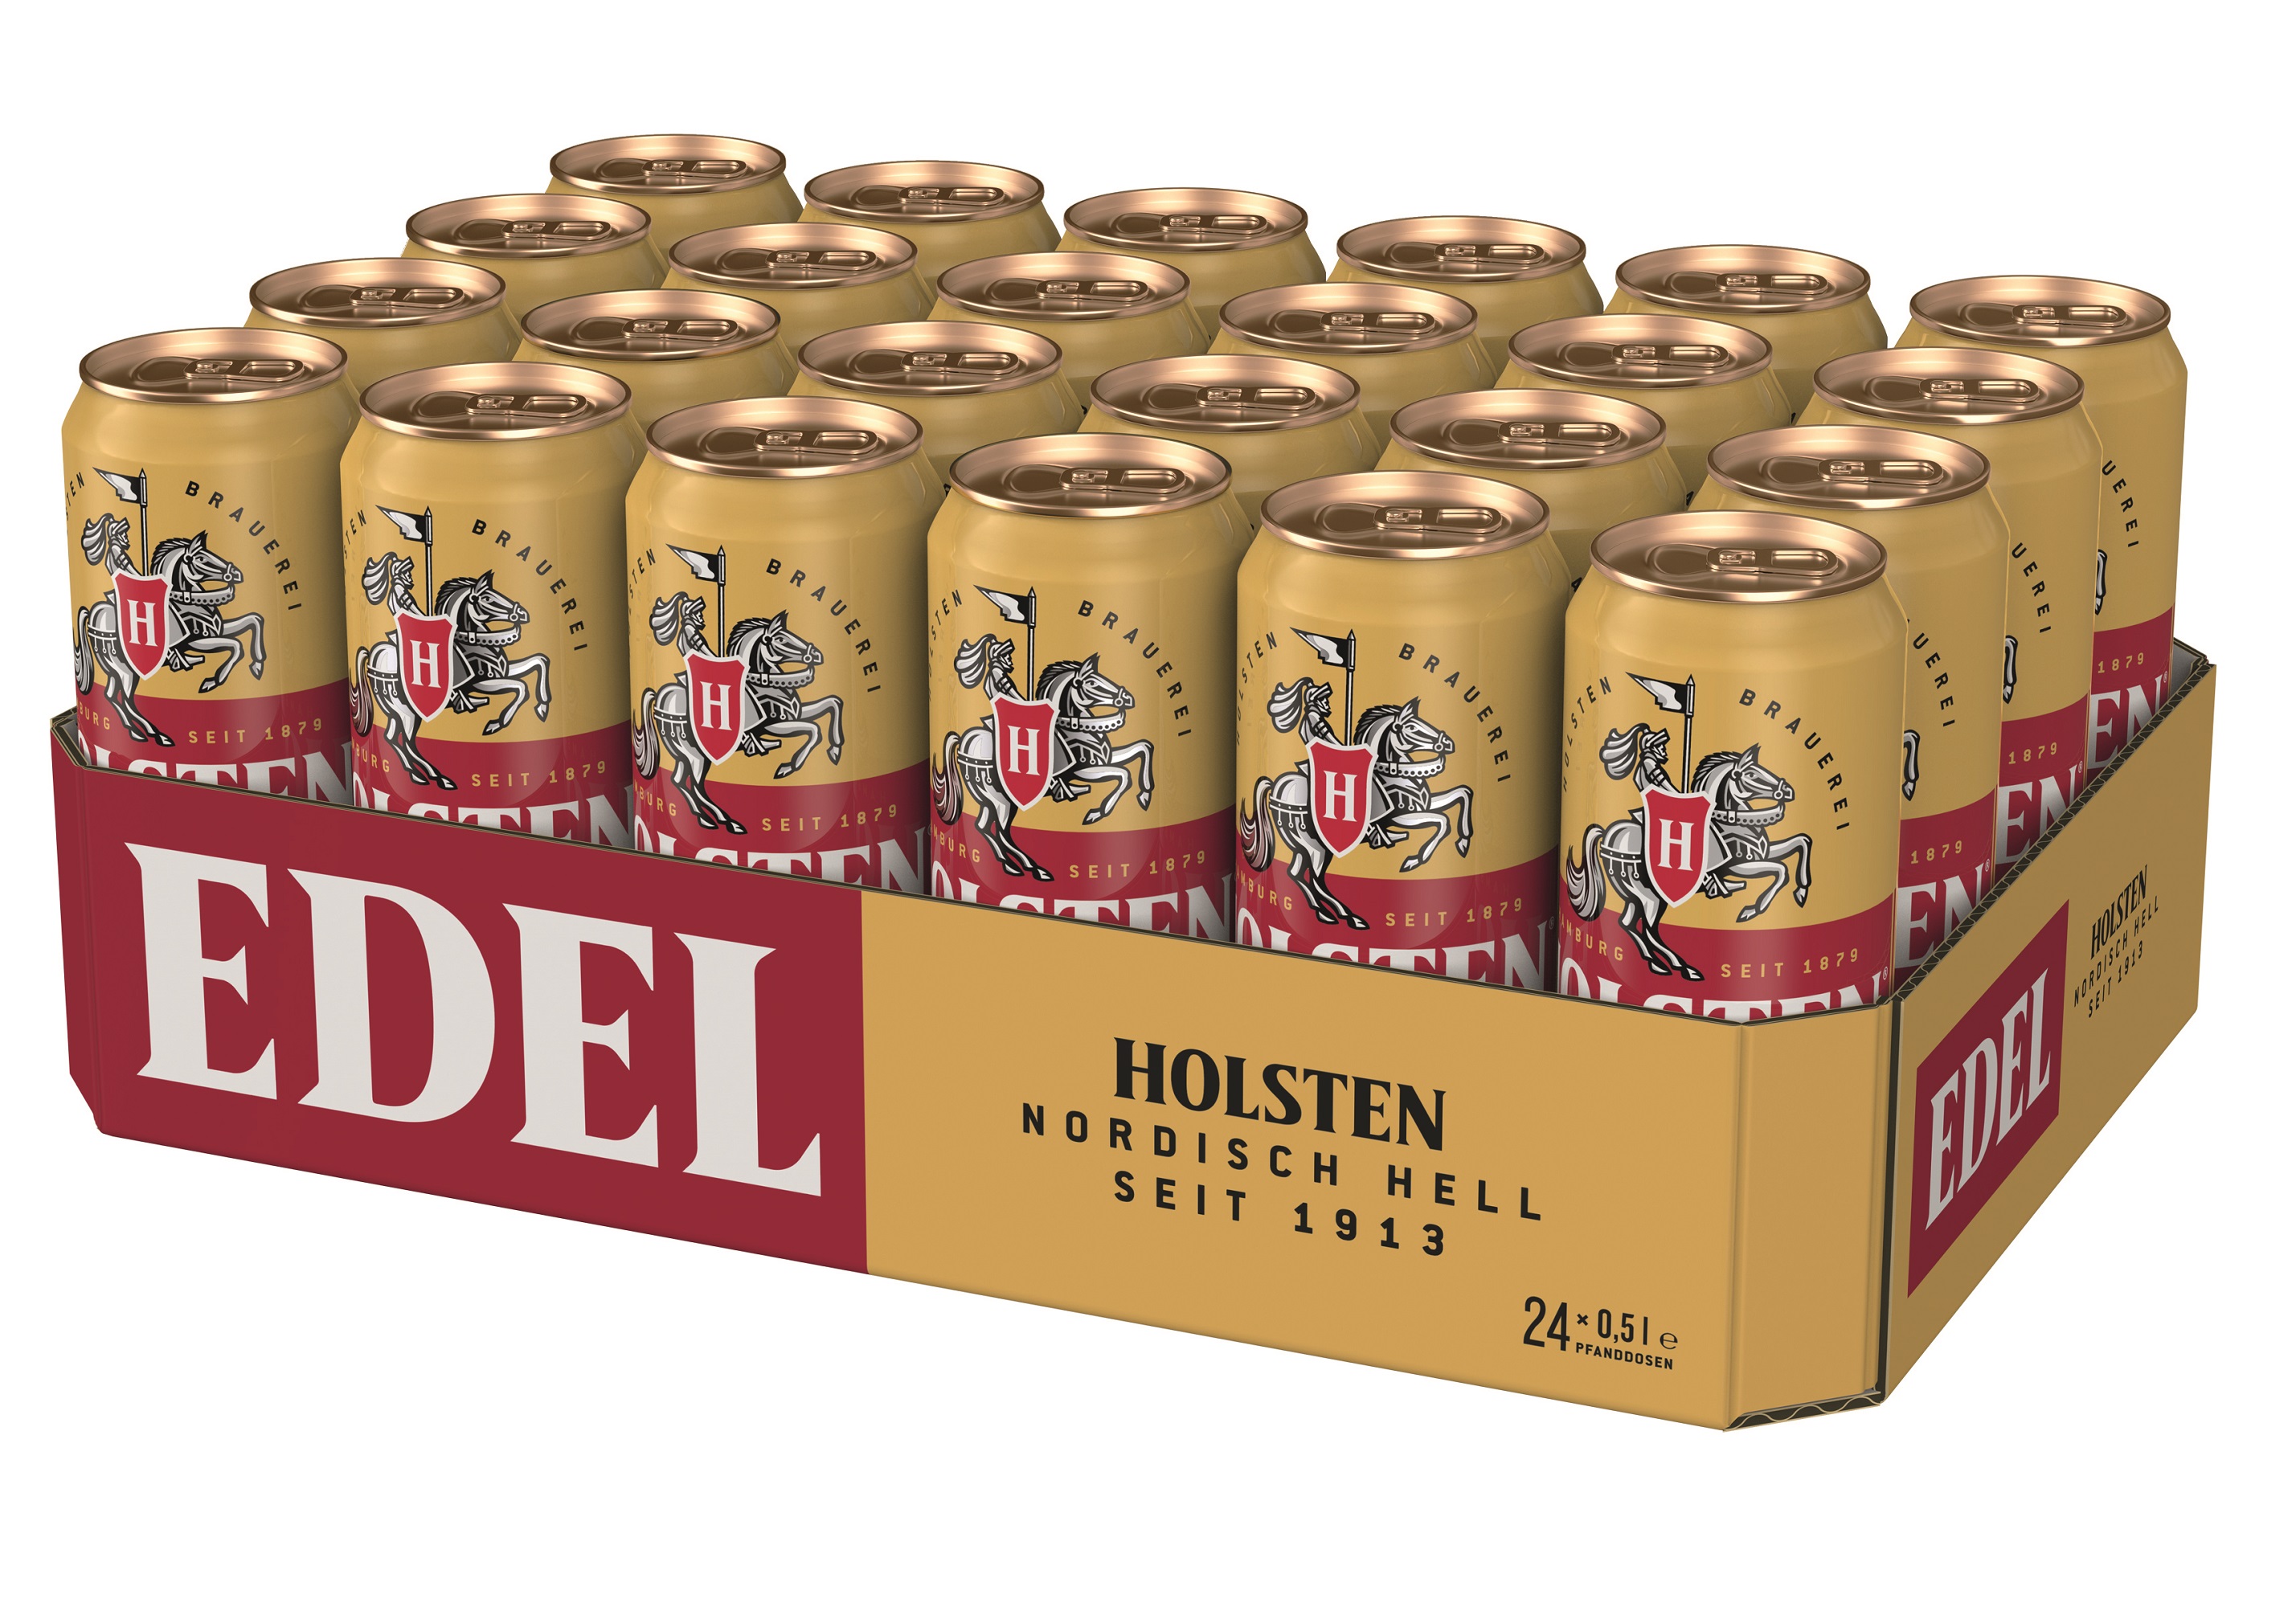 Holsten EDEL Bier im 24 x 0,5 Liter Dose Tray